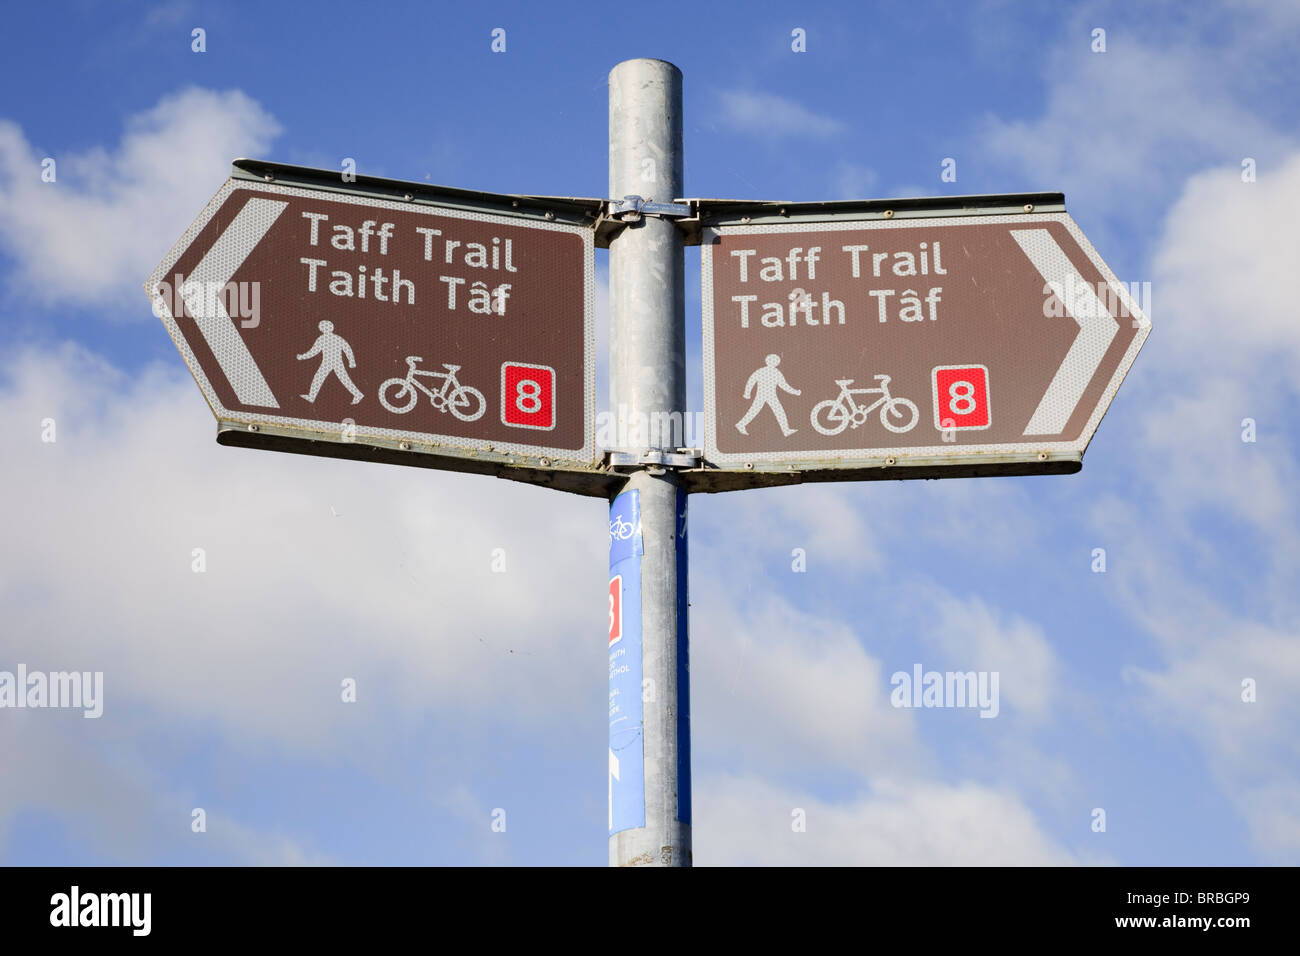 Cardiff (Caerdydd), Glamorgan, pays de Galles du Sud, Royaume-Uni. Route 8 du National cycle Network et panneau Taff Trail pour la voie publique Banque D'Images